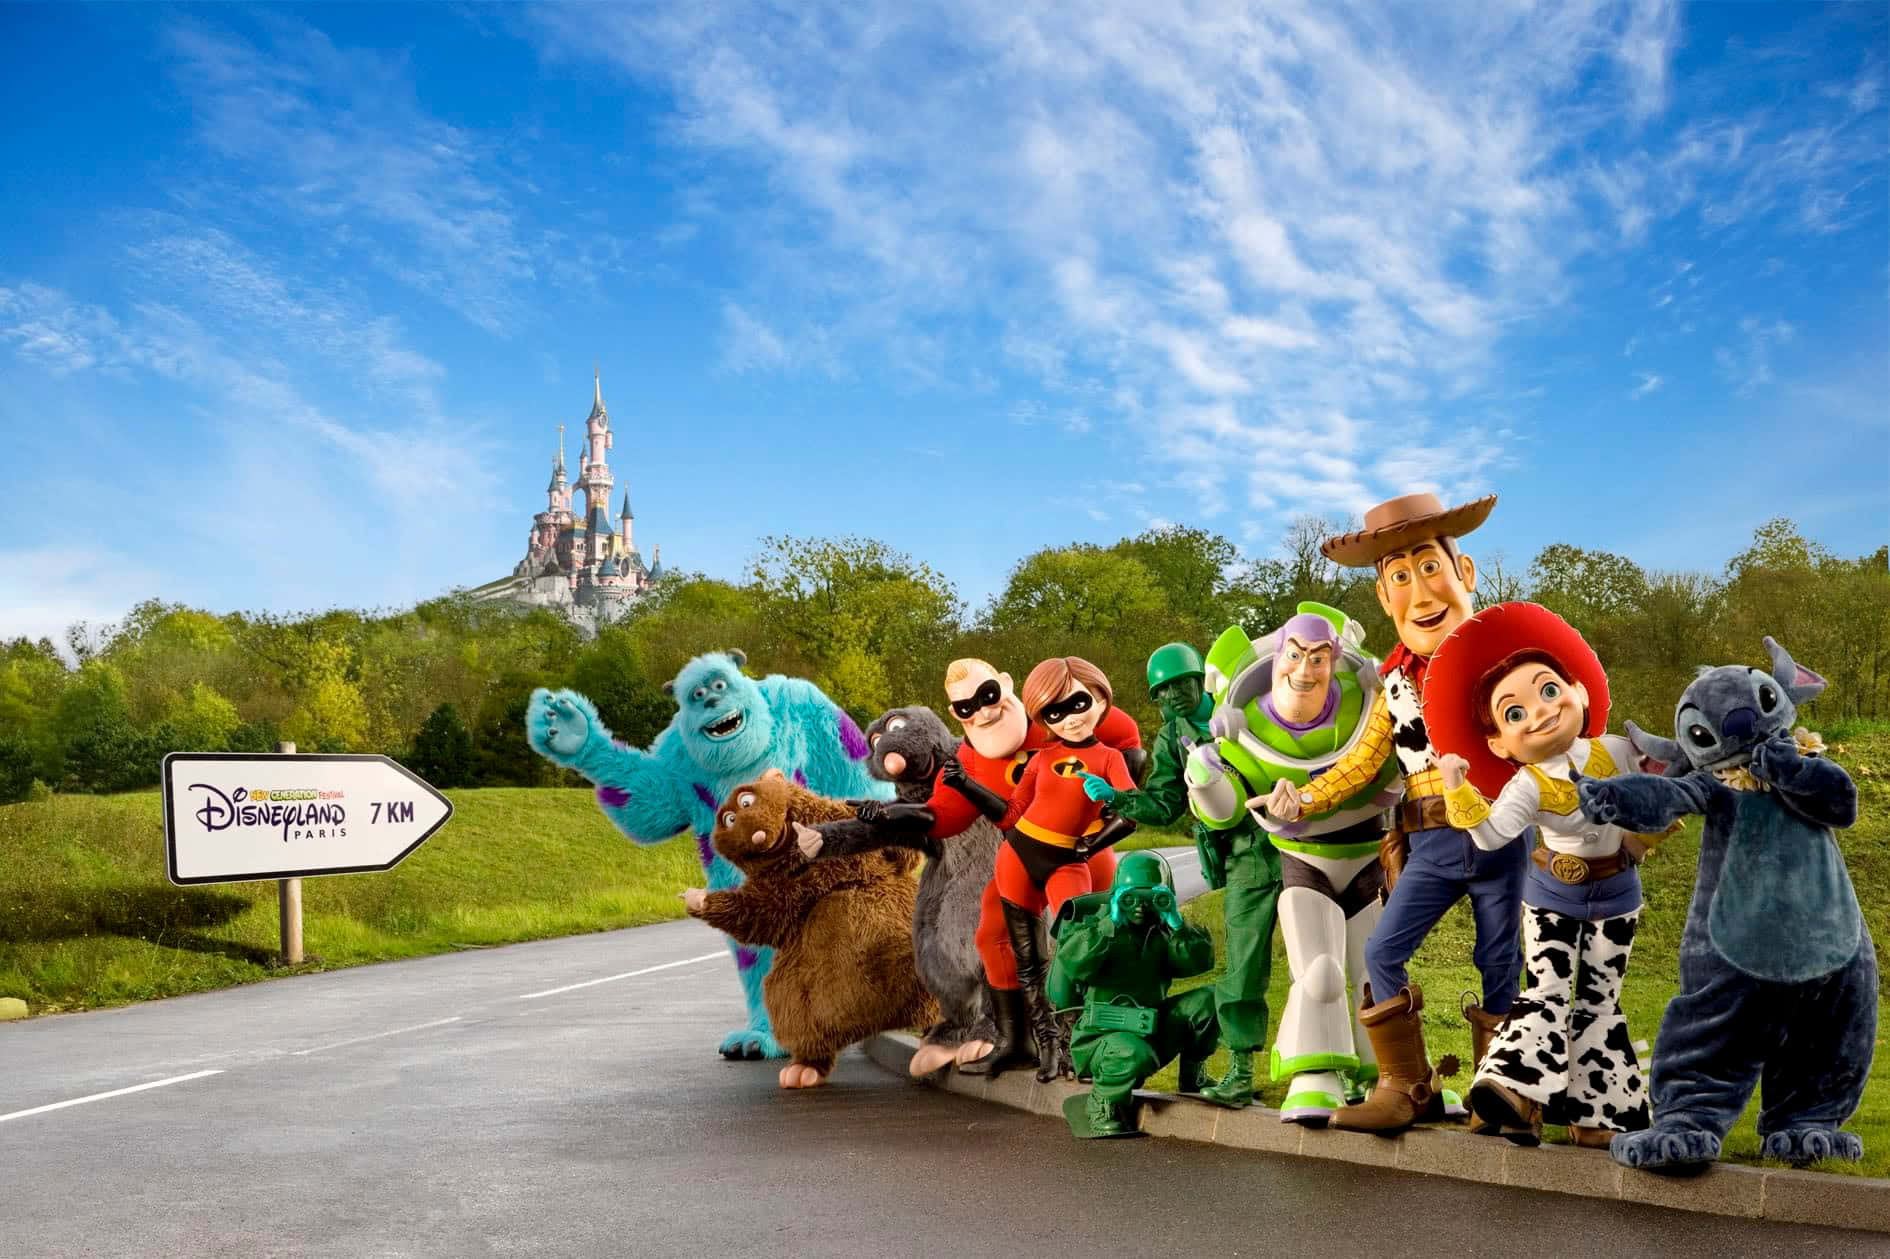 Disneyfiguren Laden Sie Ein, Disneyland Paris Zu Besuchen. Wallpaper